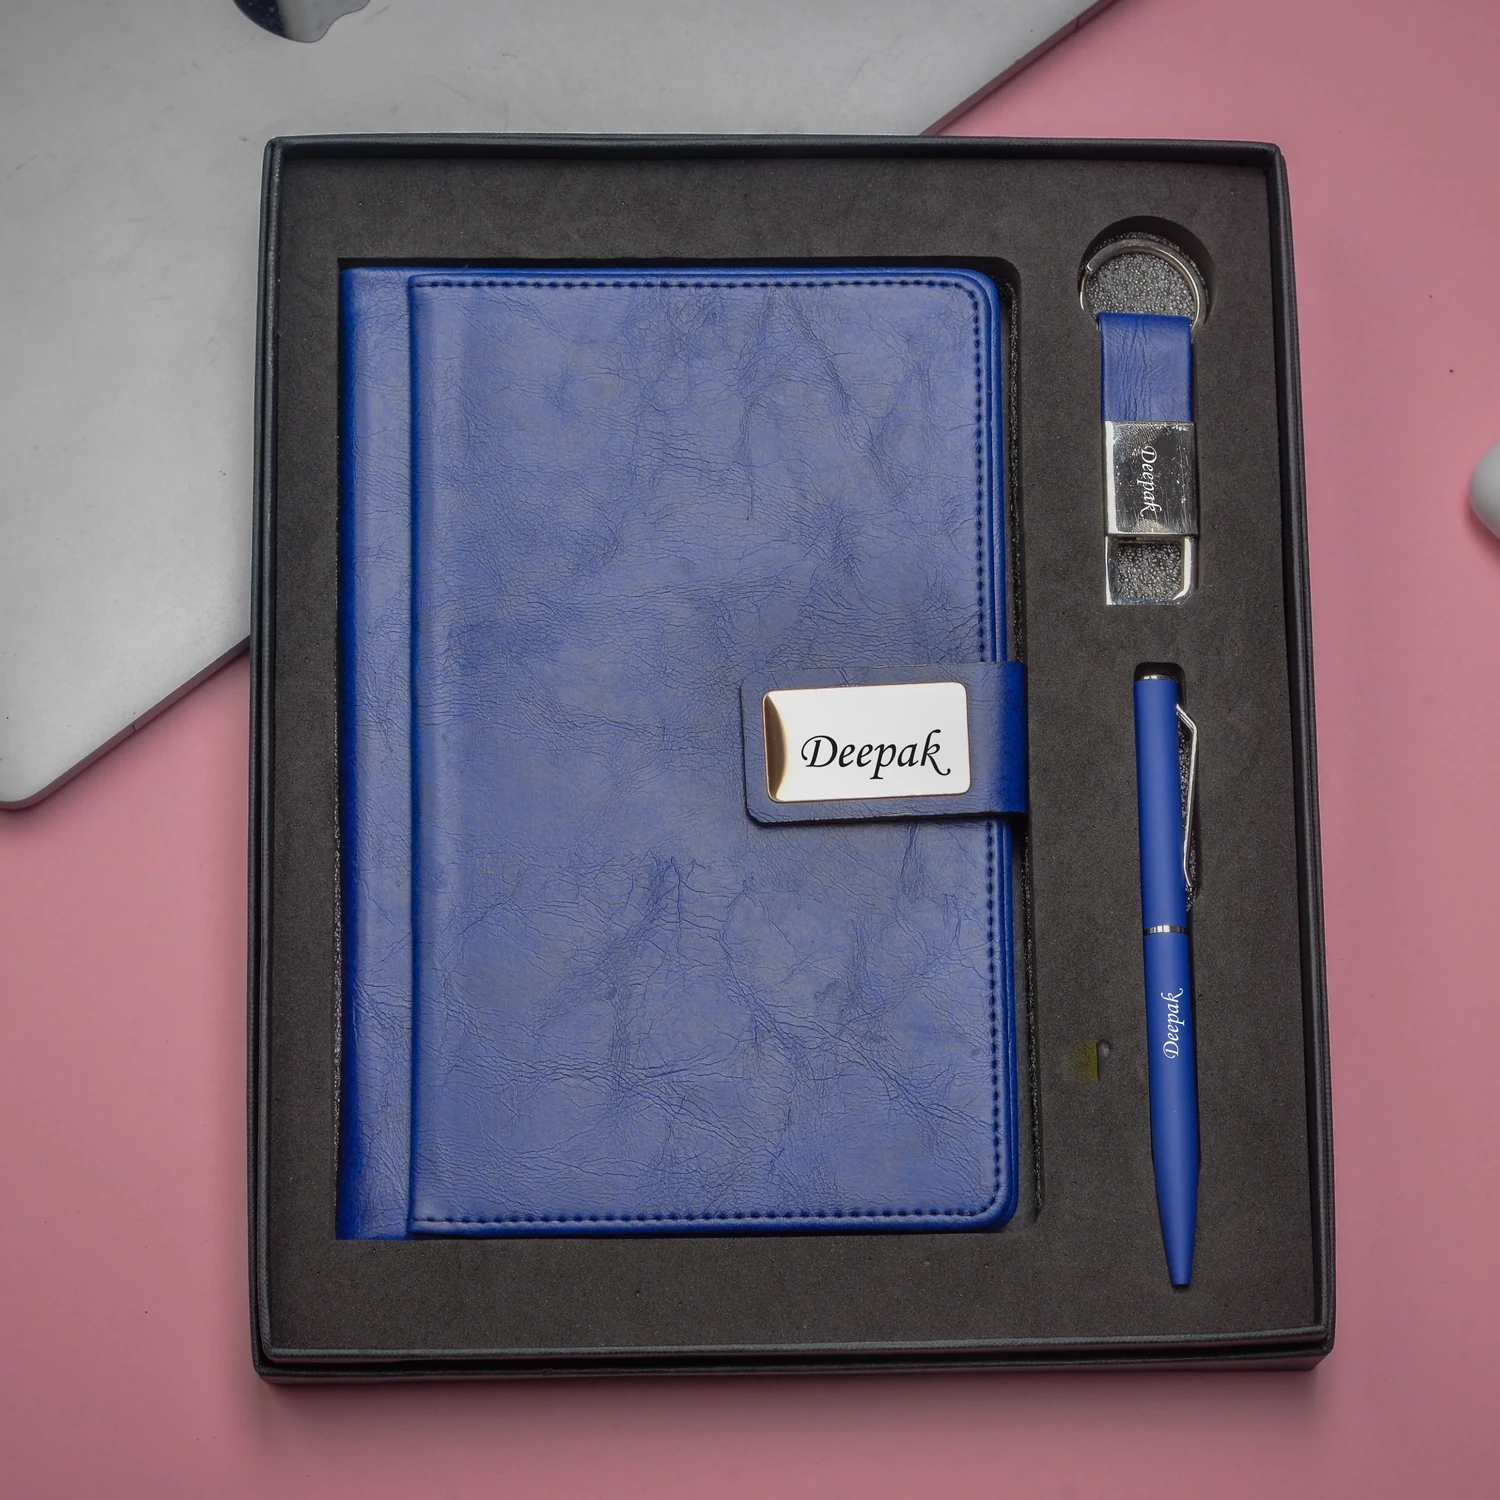 Blue Executive Diary, Pen, Keychain Combo